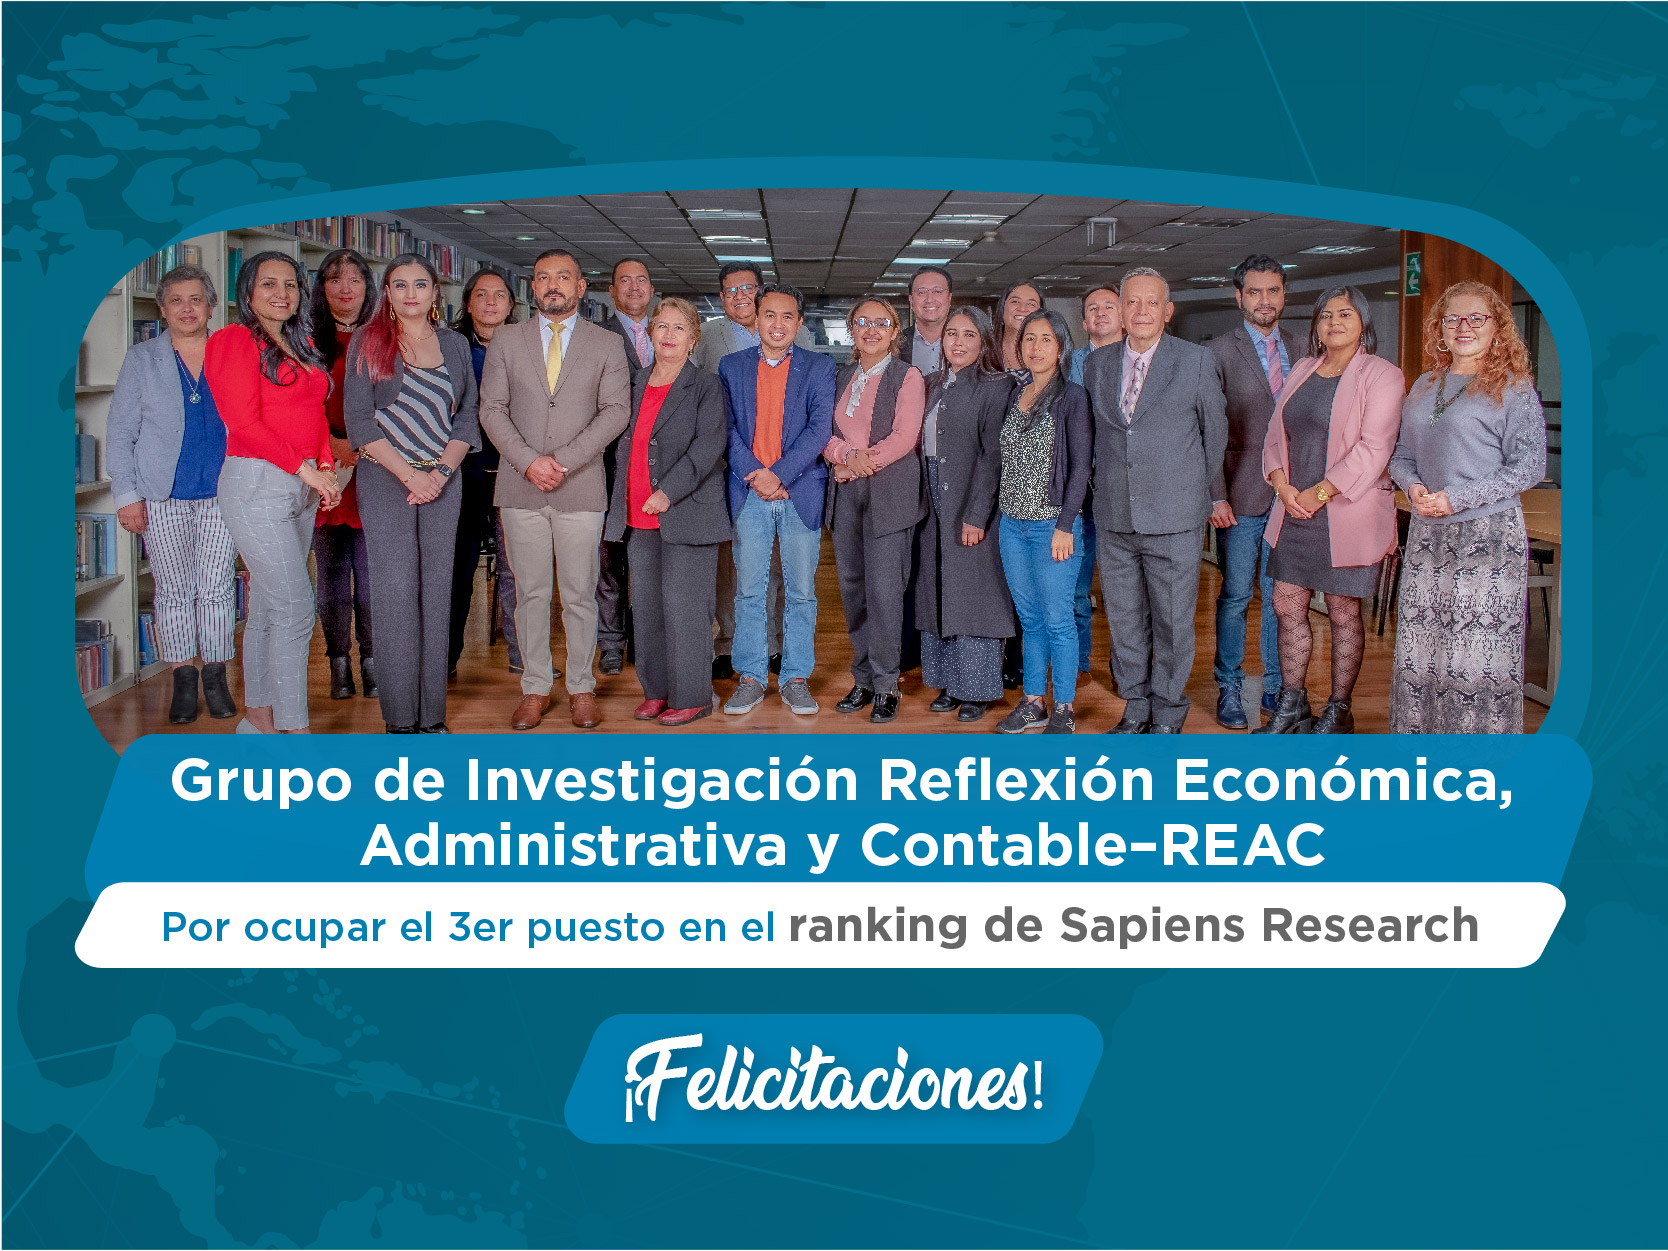 El Grupo REAC de Los libertadores aparece en el tercer puesto en ranking de investigación